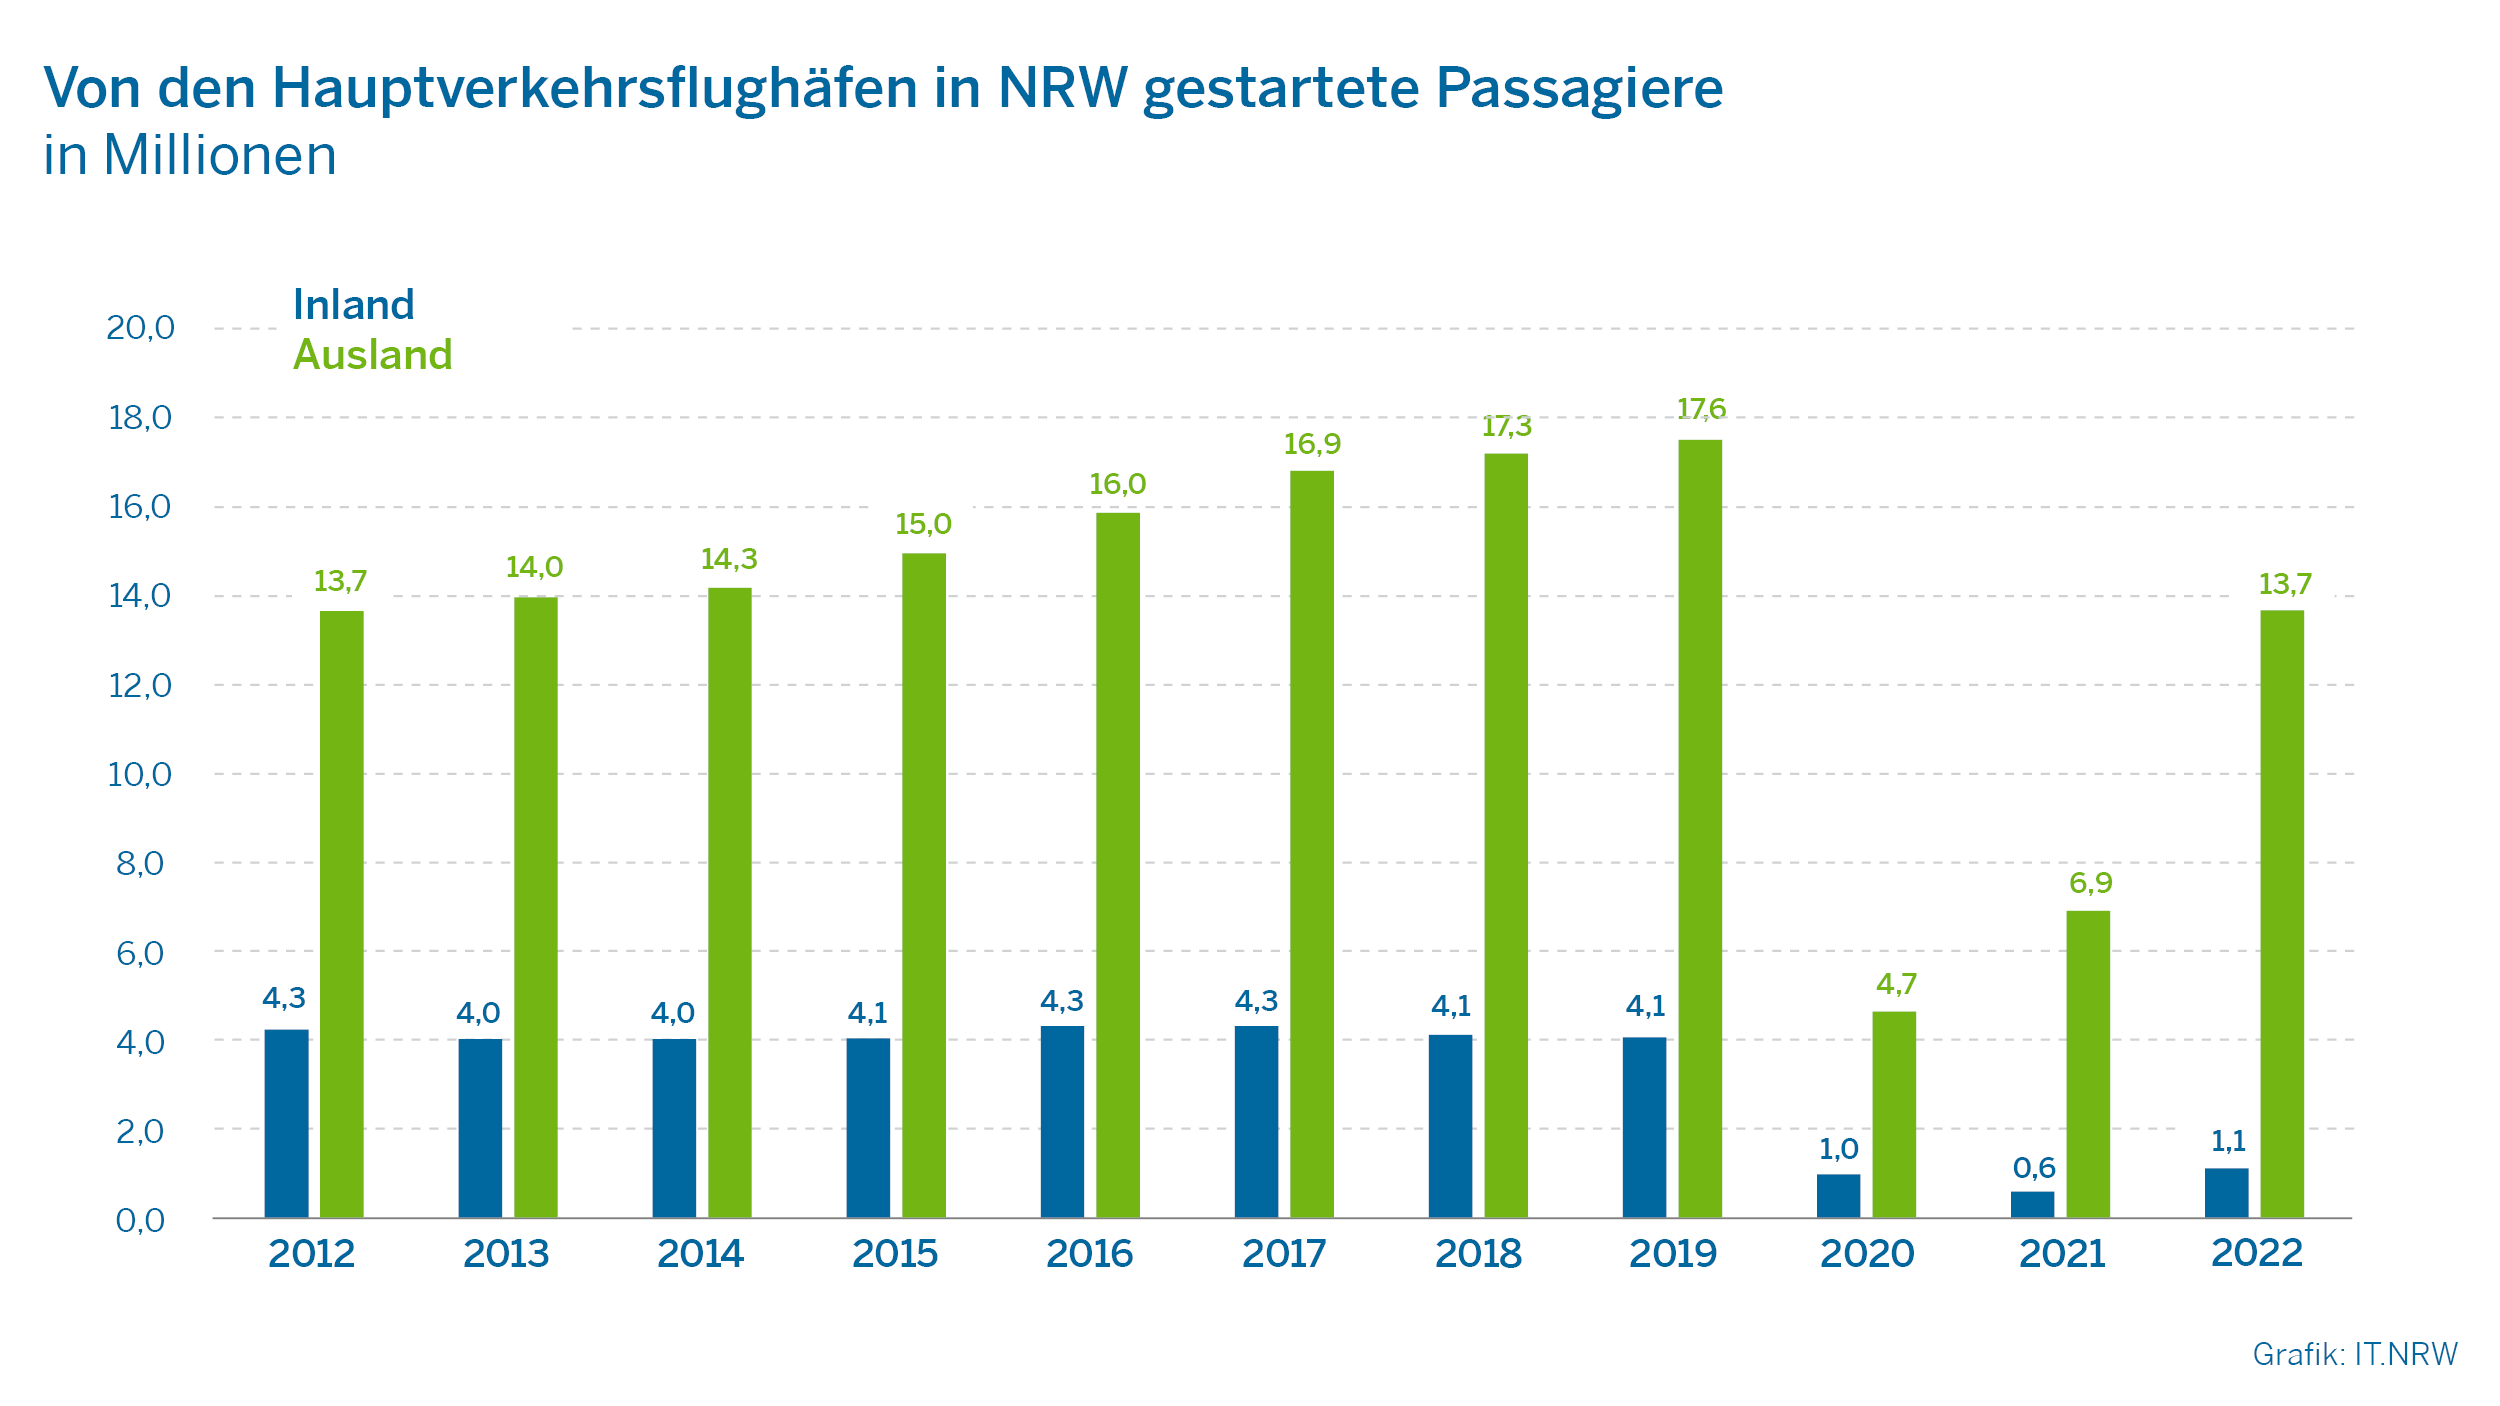 Von den Hauptverkehrsflughäfen in NRW getsartete Passagiere